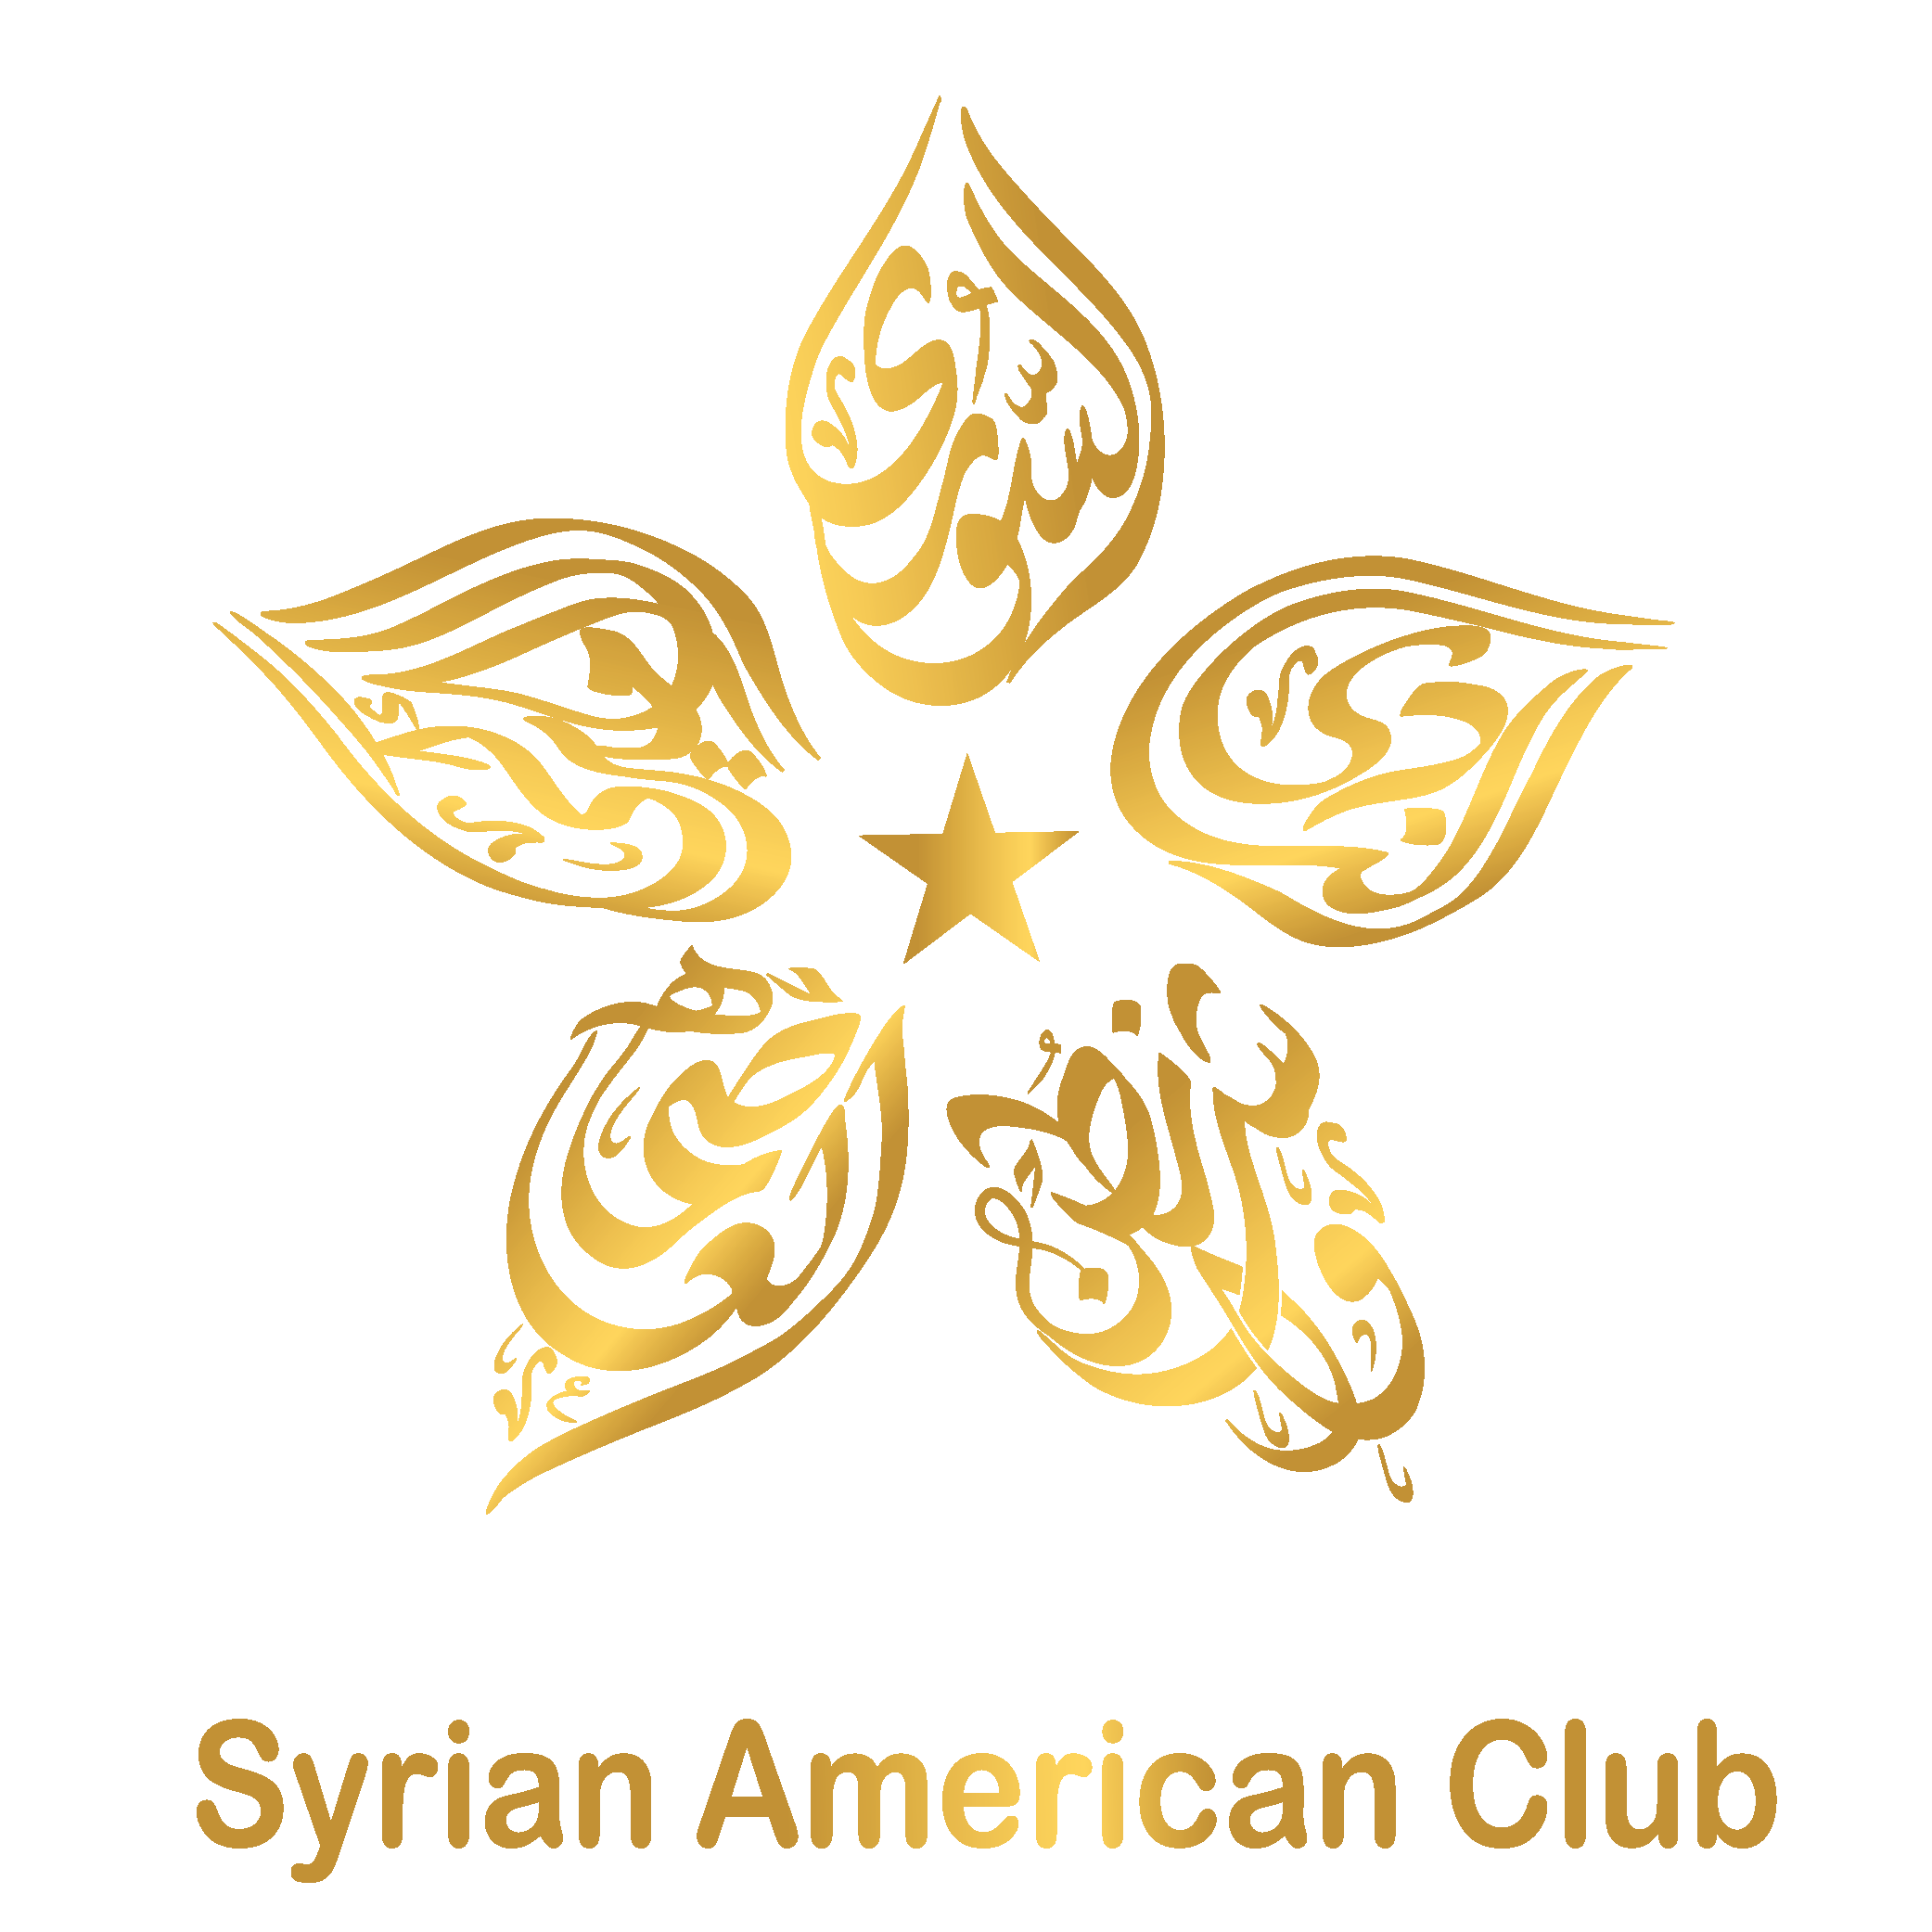 The DC Syrian American Club